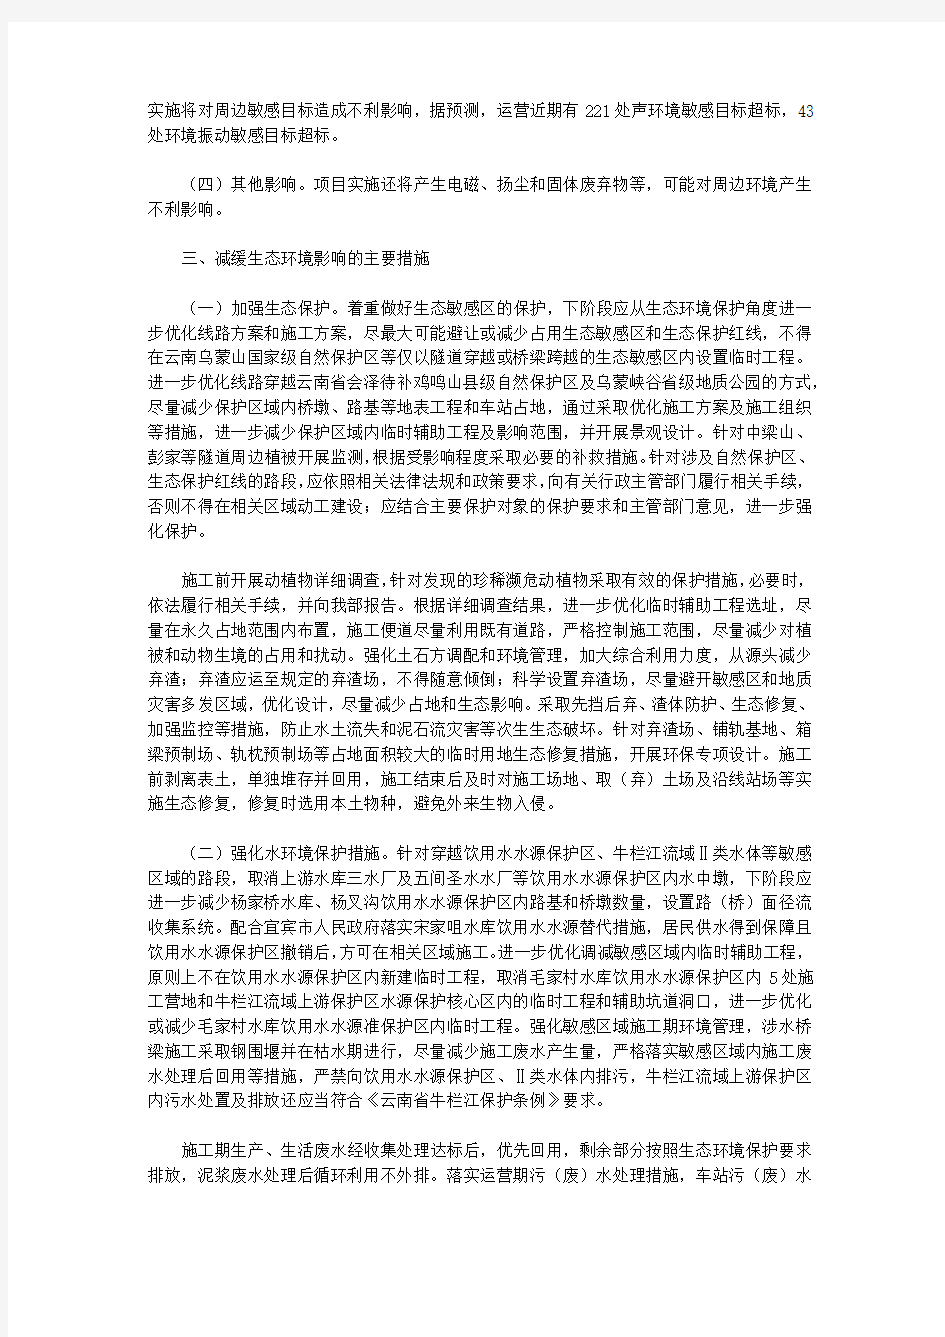 关于新建重庆至昆明高速铁路环境影响报告书的批复(2020)